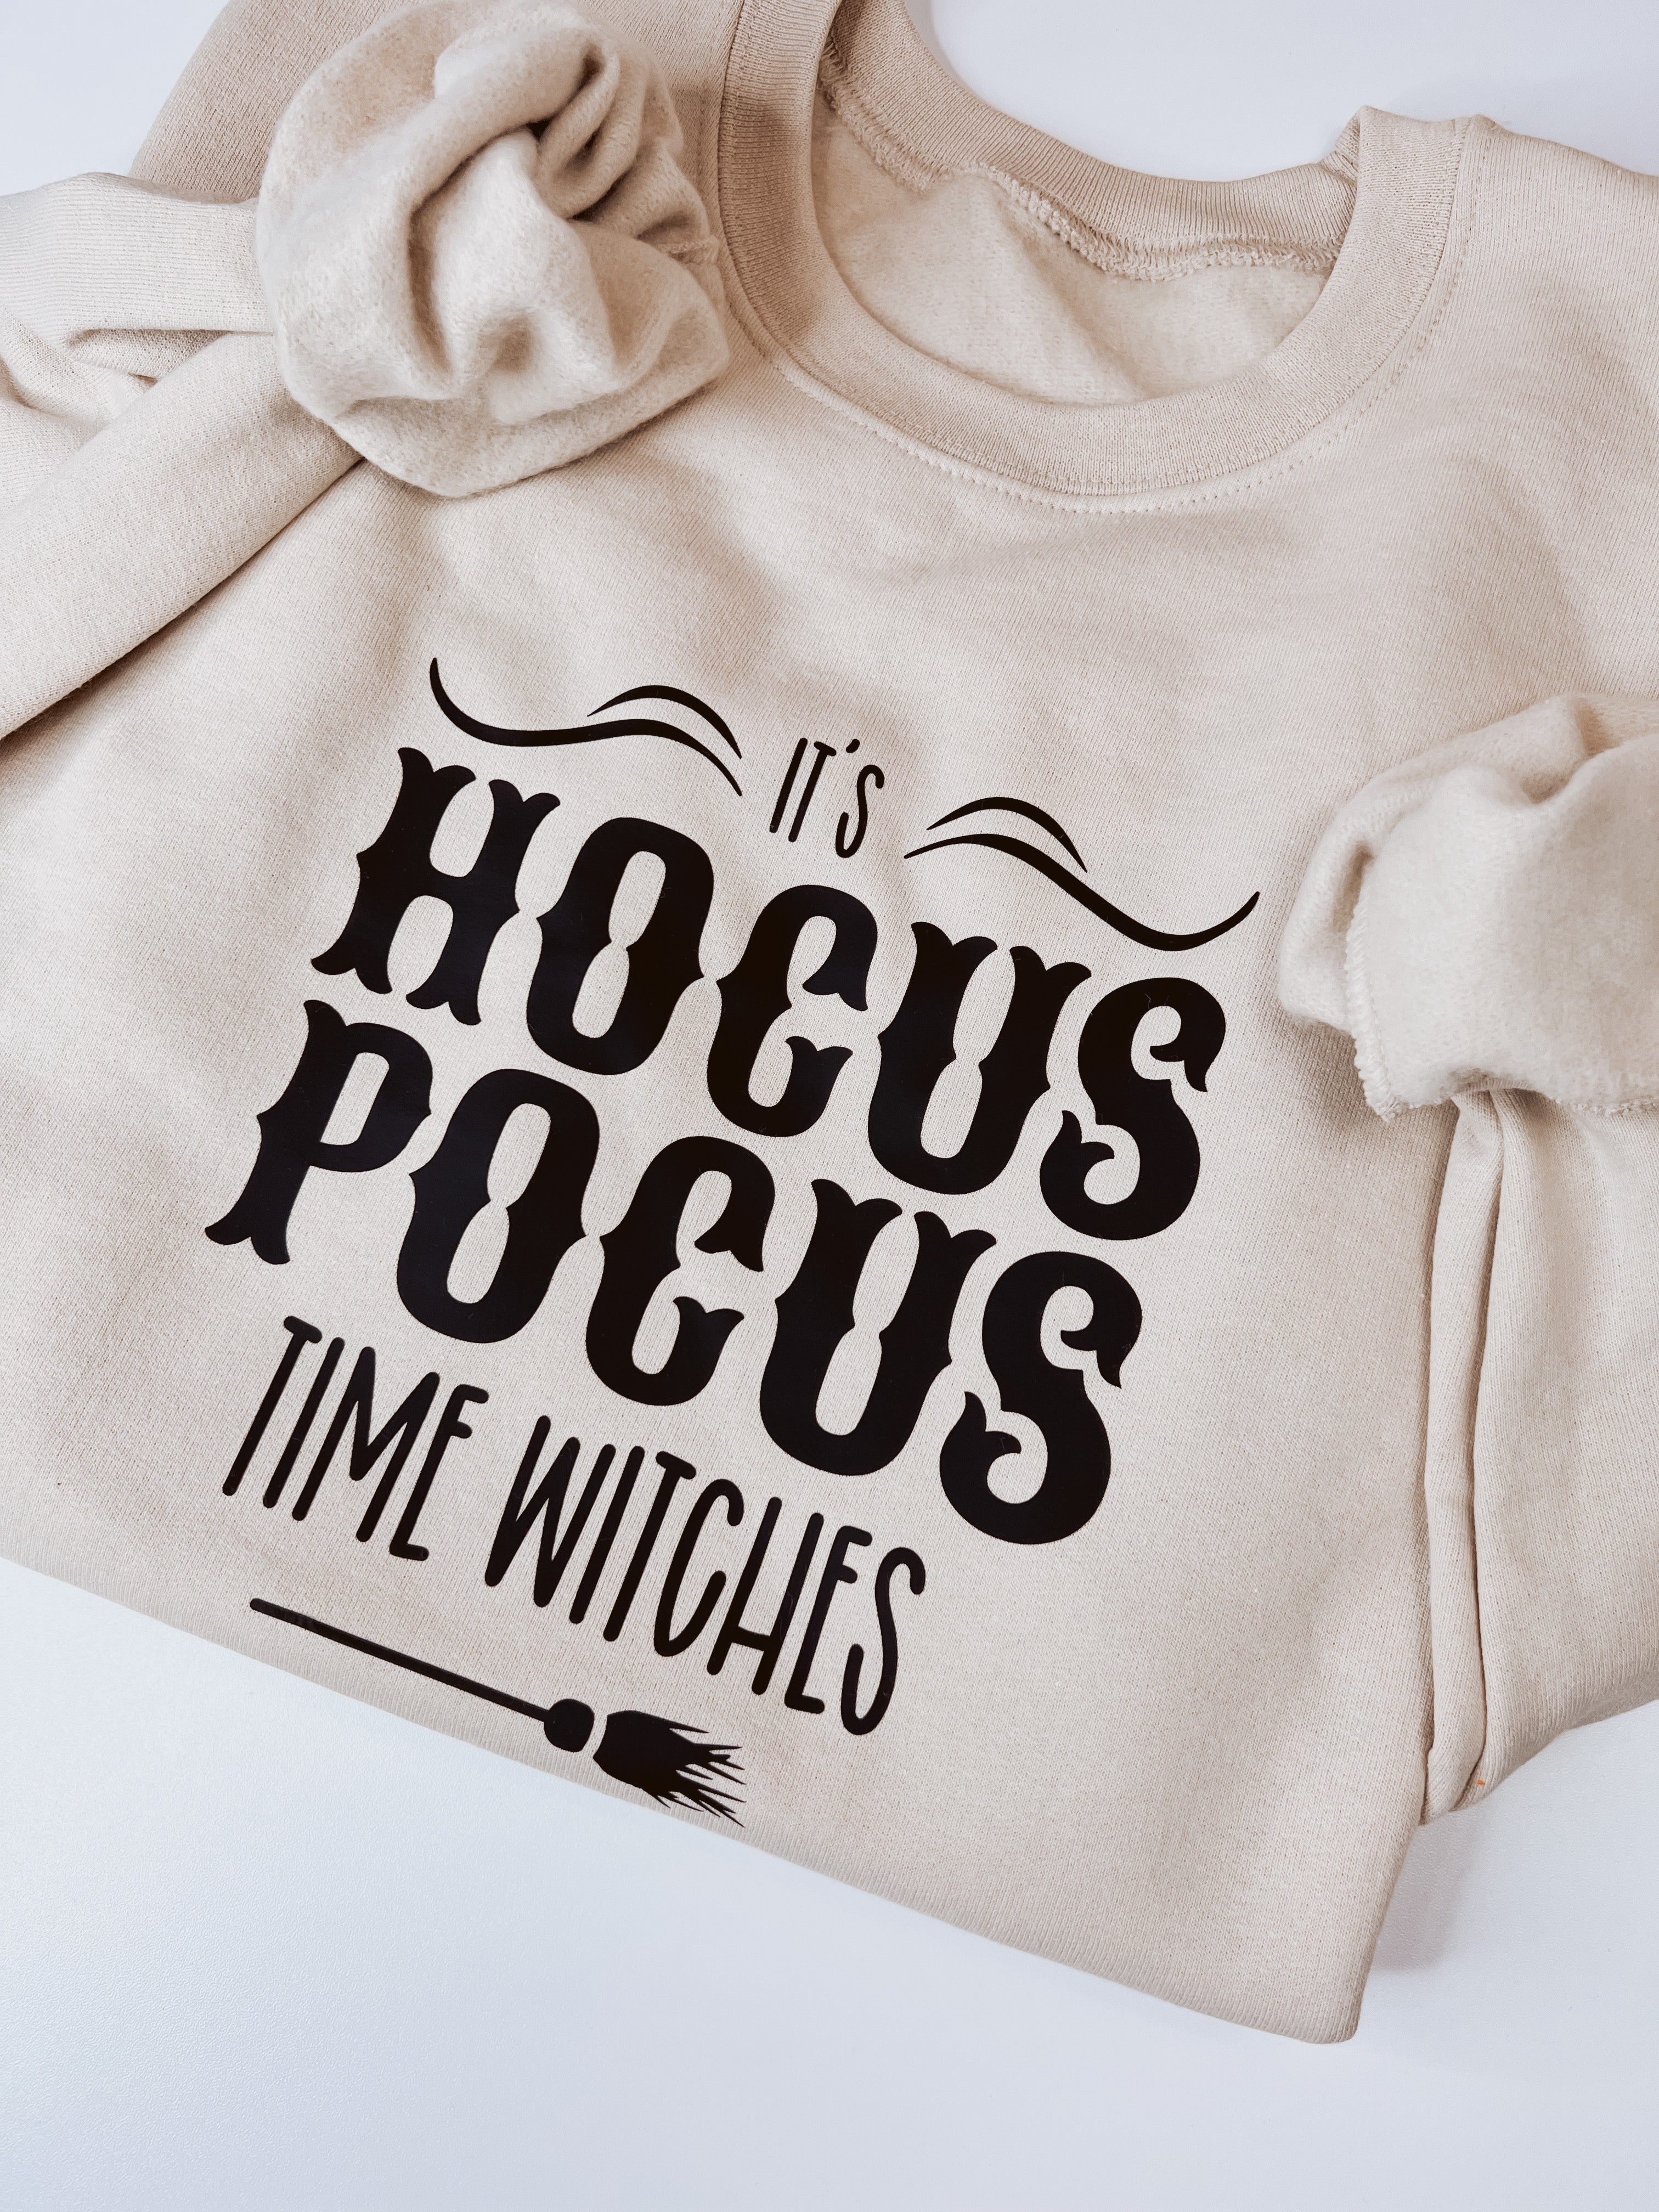 It's Hocus Pocus Time Witches